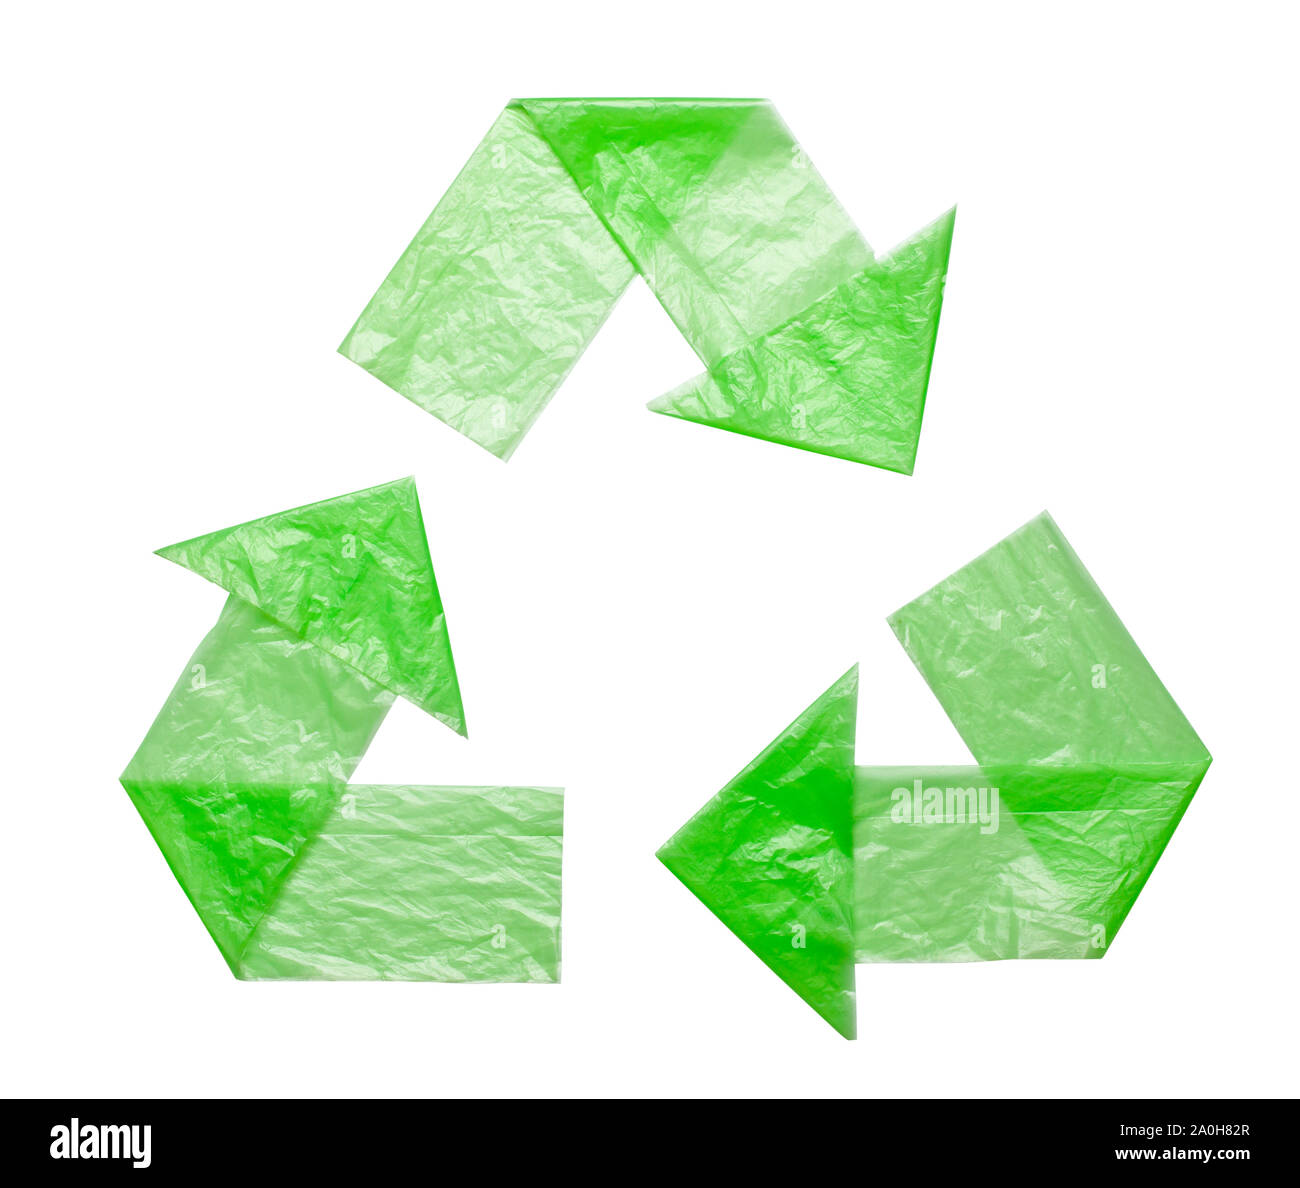 Bolsas ecológicas de tela en blanco o bolsas de tela de hilo de algodón,  bolsas vacías y símbolo de reciclaje verde